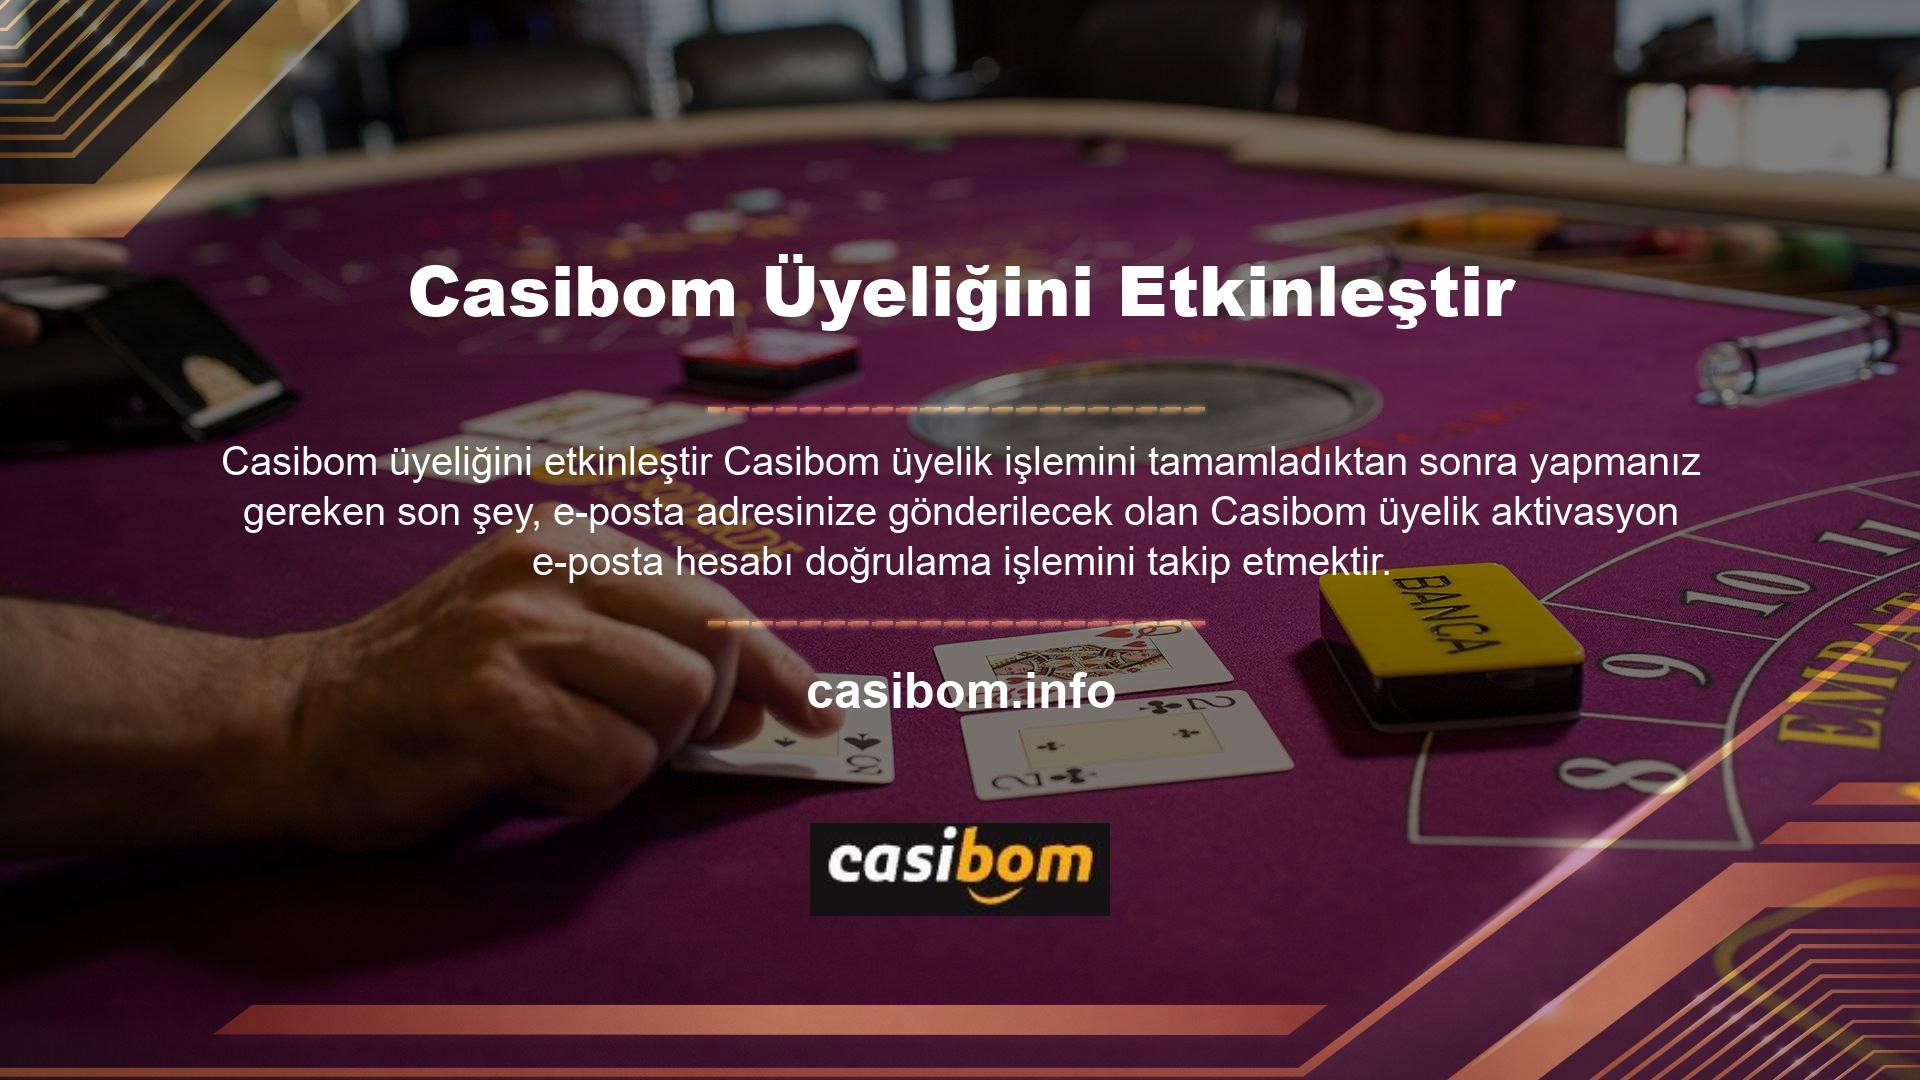 Bu programı sunarak, Casibom web sitesindeki üye kimlik bilgilerinizi kullanarak hesabınıza erişebilirsiniz